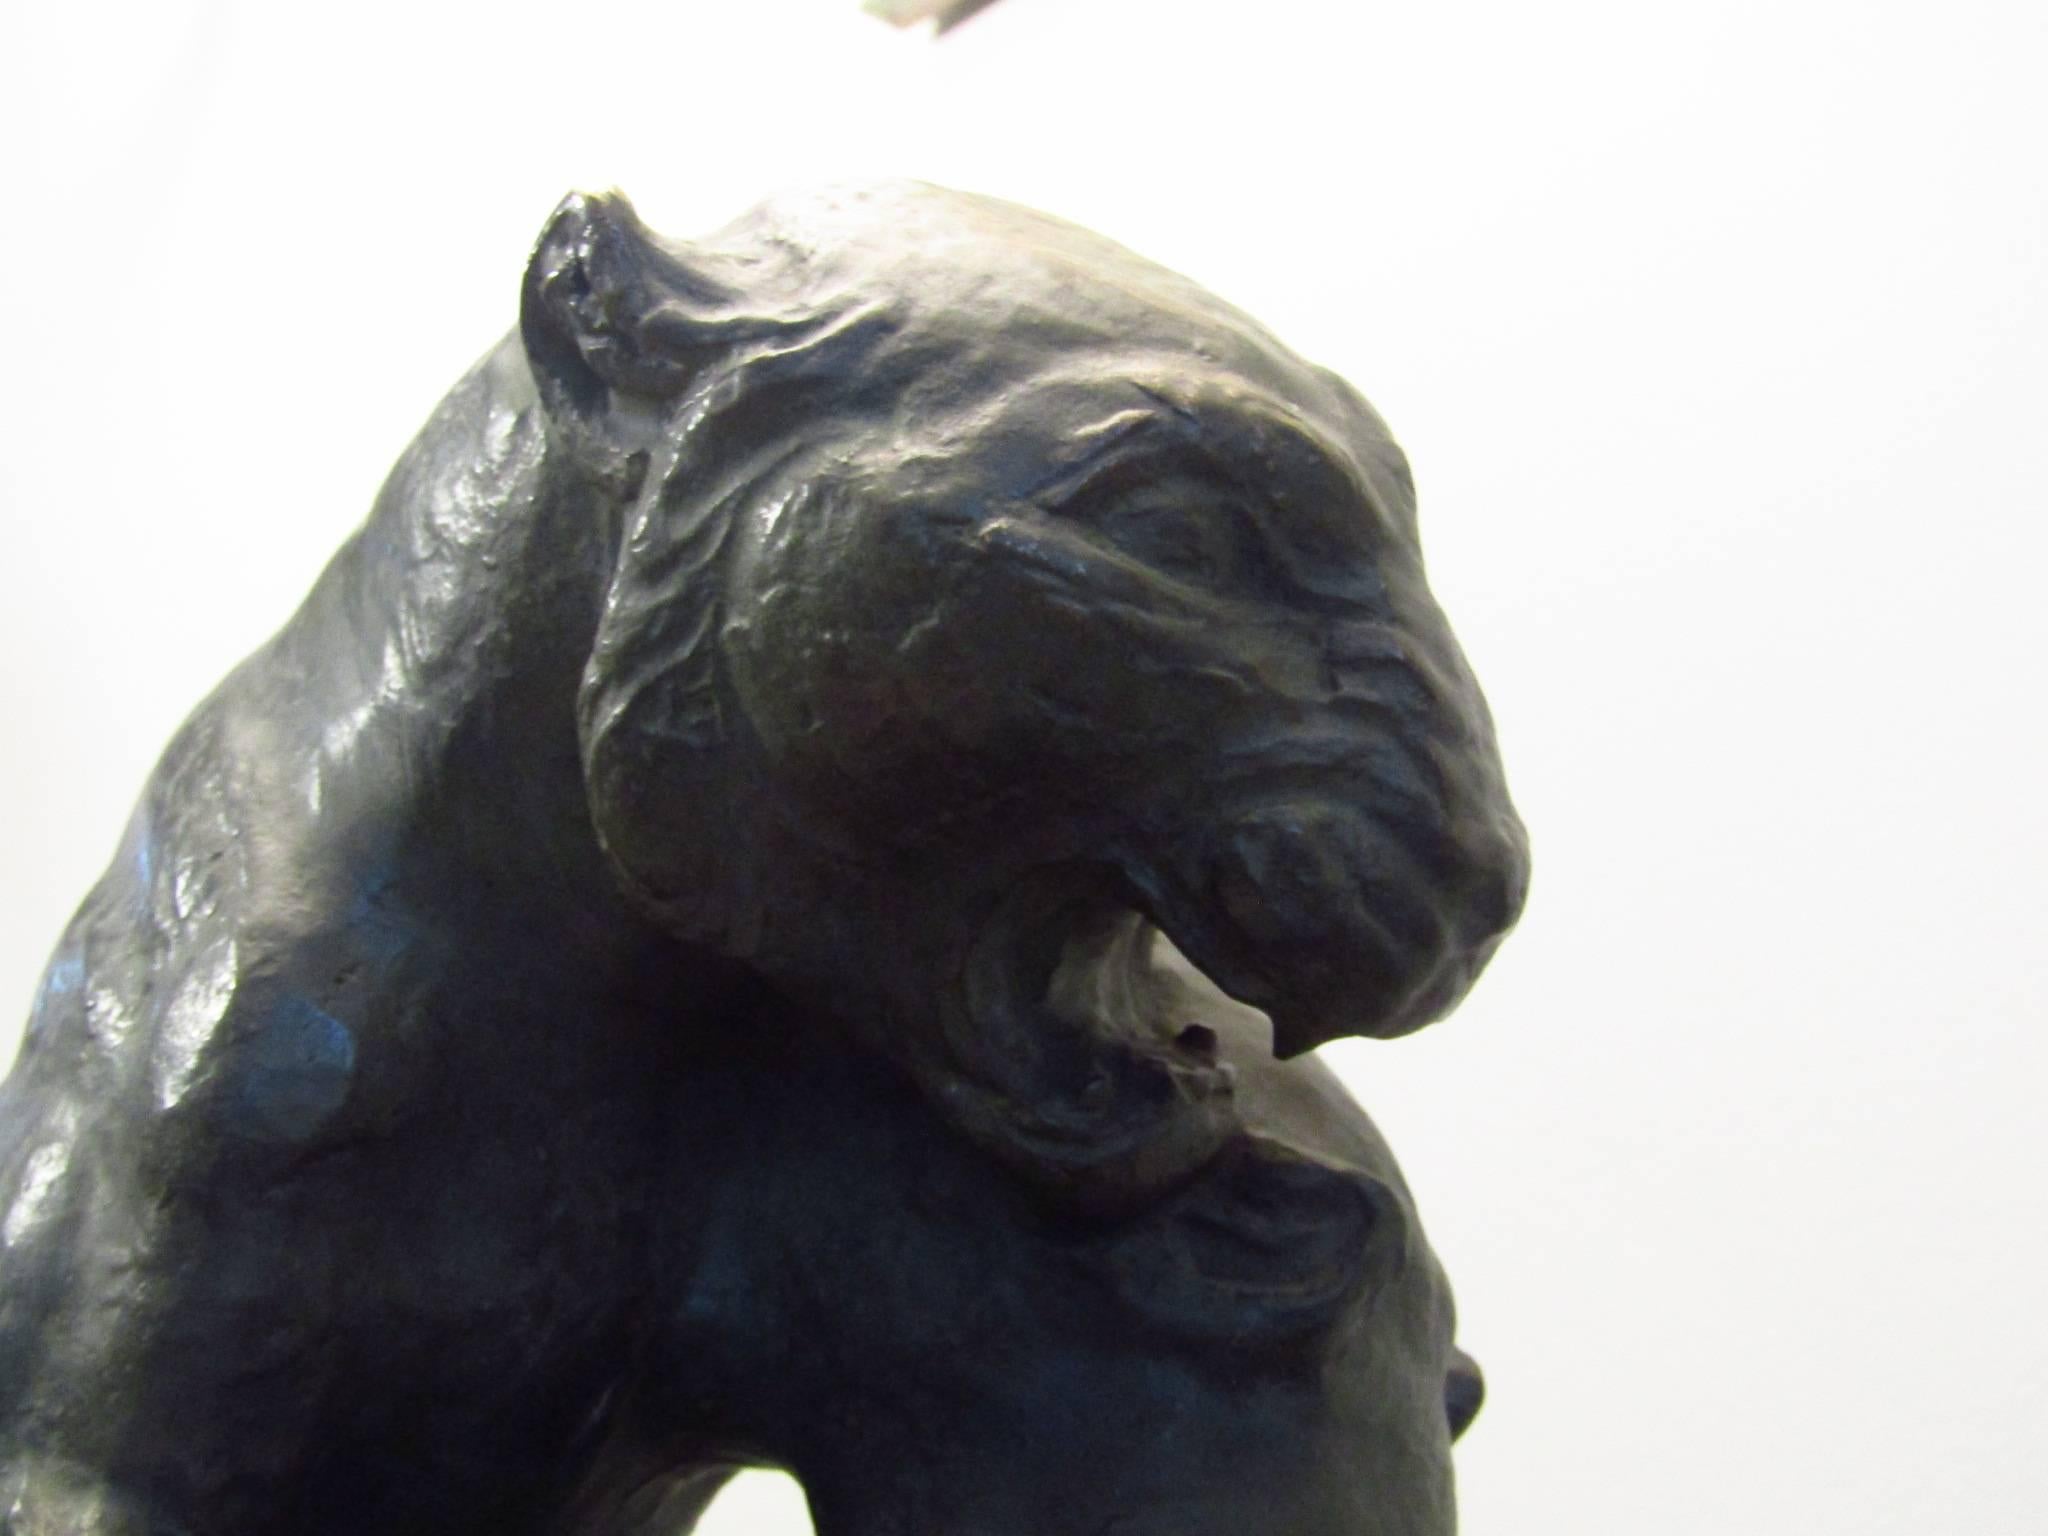 Französische Art Déco-Bronze signiert H. Robert, zwei spielende Panther, Frankreich, 1930er Jahre. Sehr groß, sehr schwer (etwa 30 kg). Auf Marmorsockel.

Wir bieten einen Versand von Tür zu Tür. Bitte fordern Sie Ihr Angebot an.